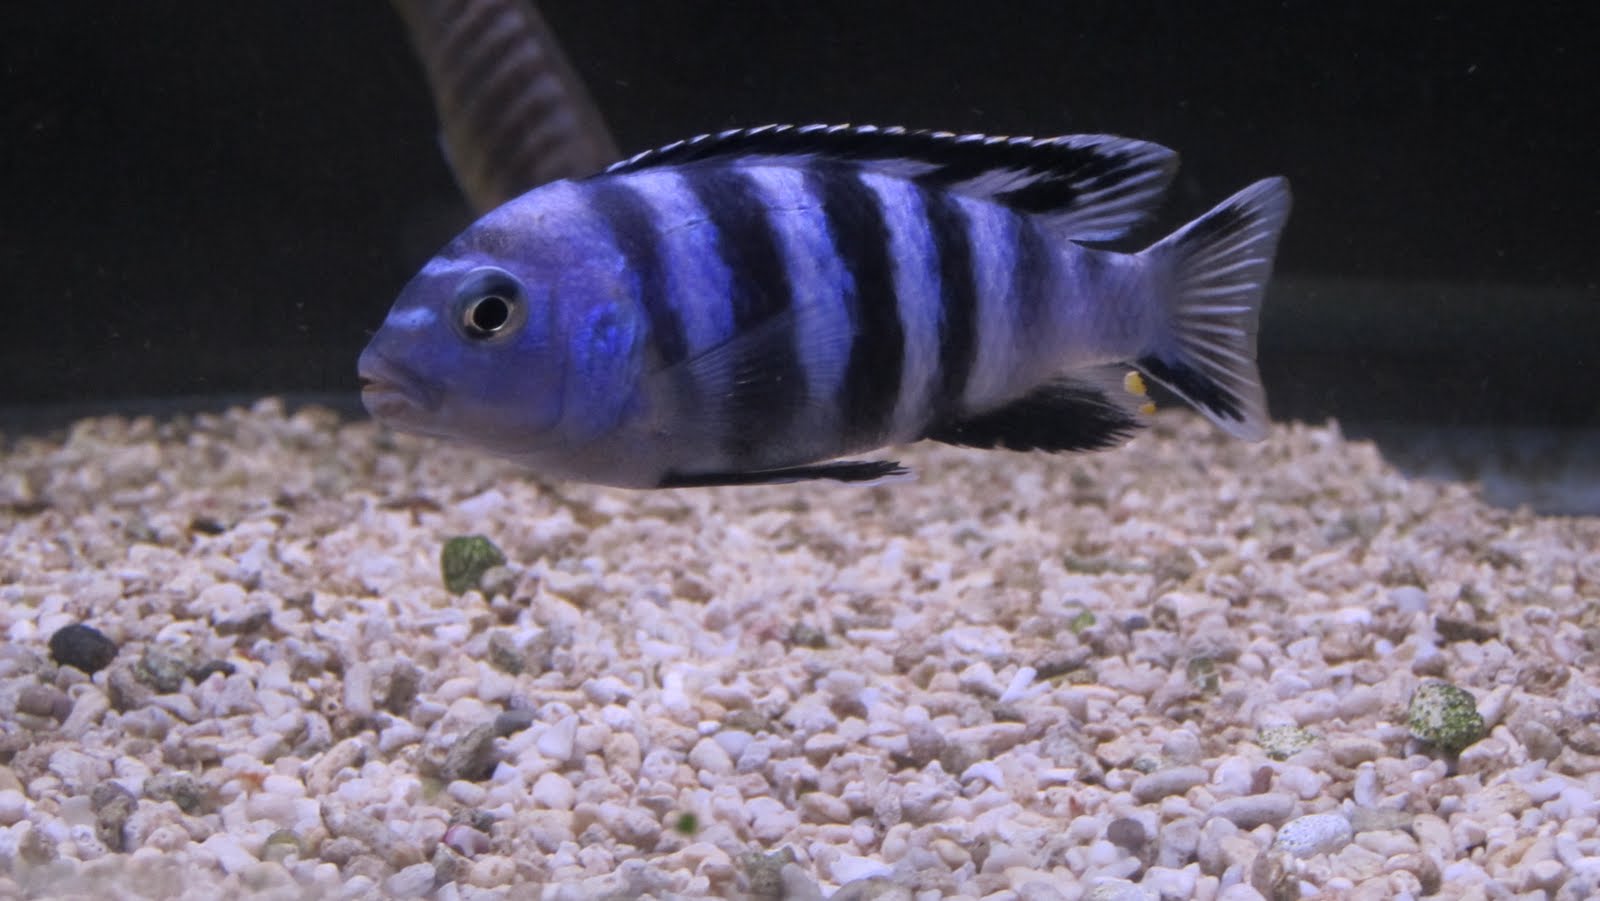 mal/tang fish: Pseudotropheus saulosi